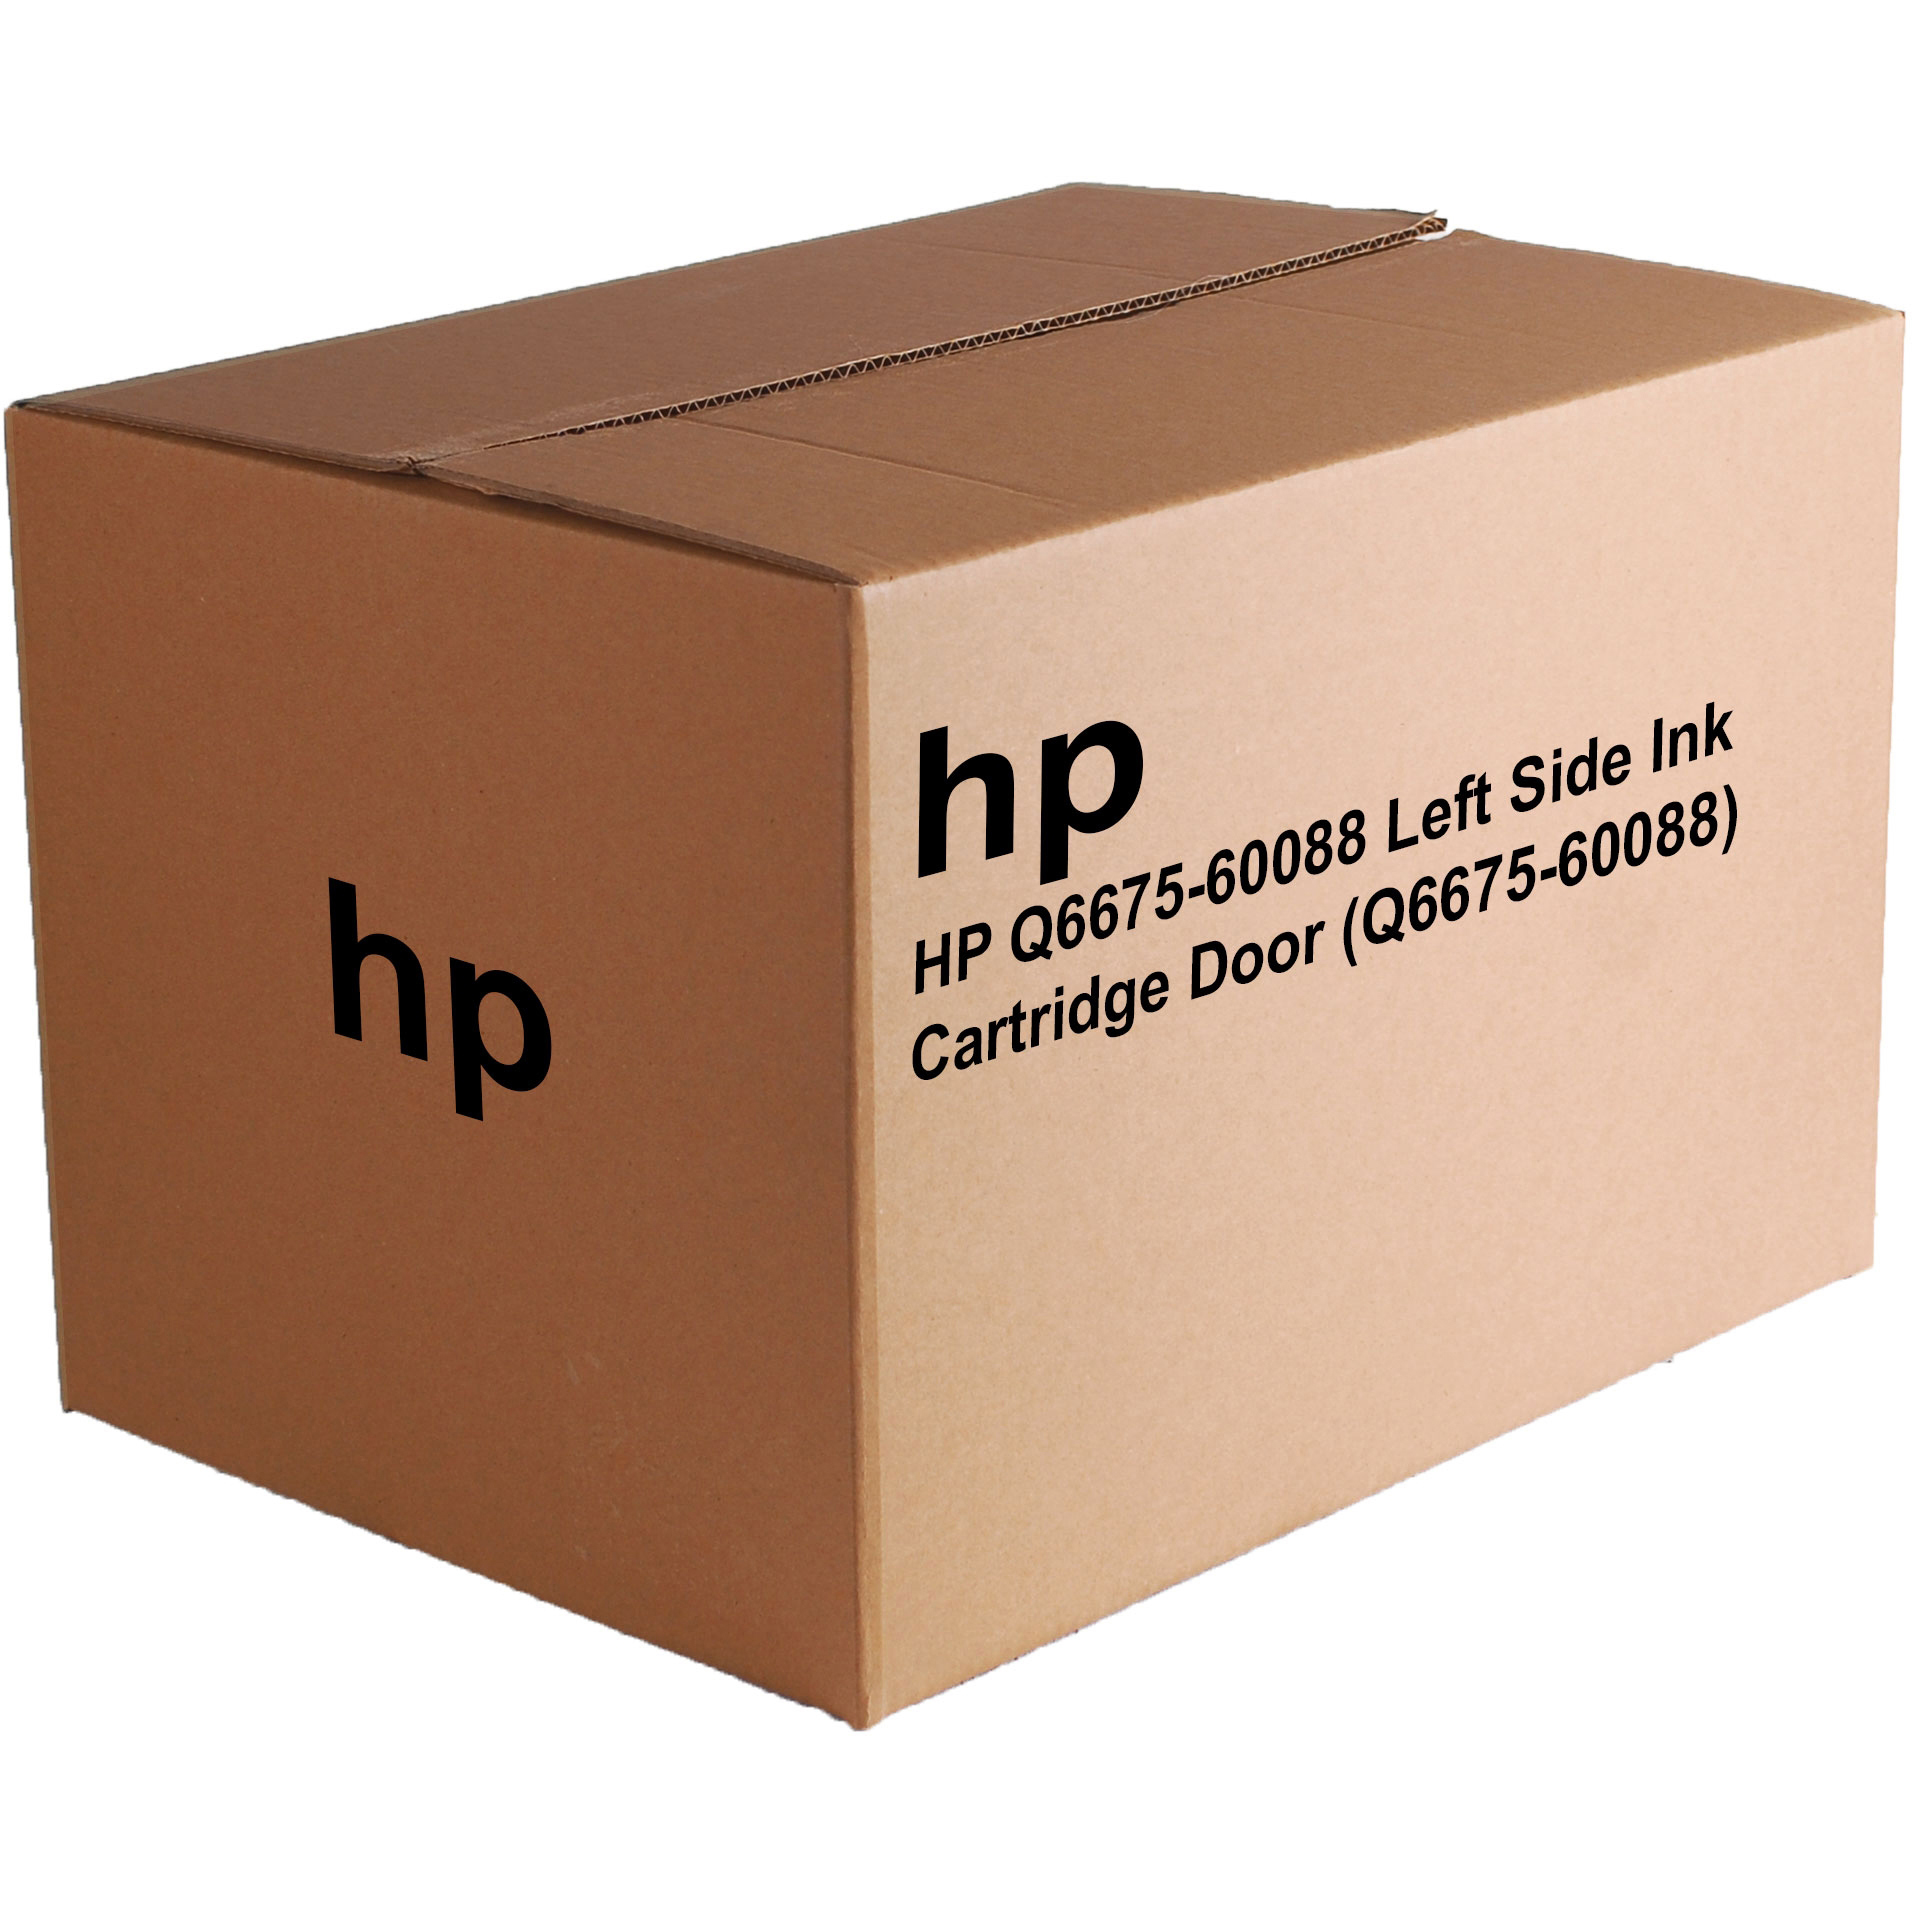 Original HP Q6675-60088 Left Side Ink Cartridge Door (Q6675-60088)